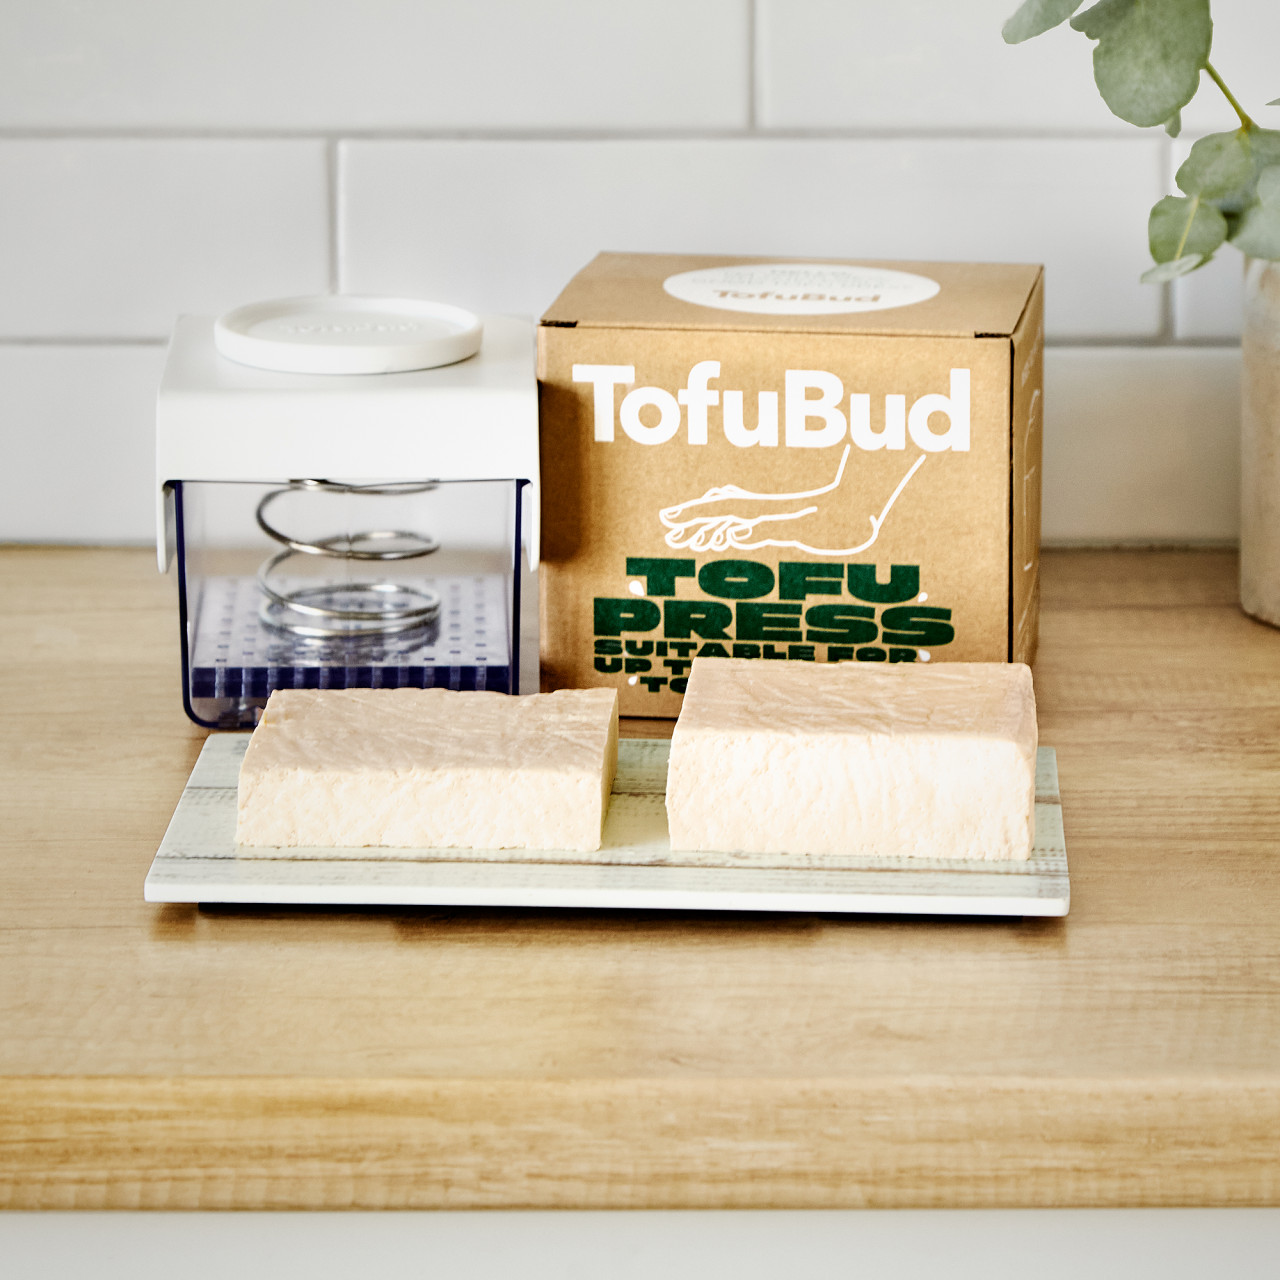 Kit presa pentru branza tofu, TofuBud, capacitate 400 gr, manuala, 2 nivele de presare, cu sistem de drenare a apei, durabil si sustenabil